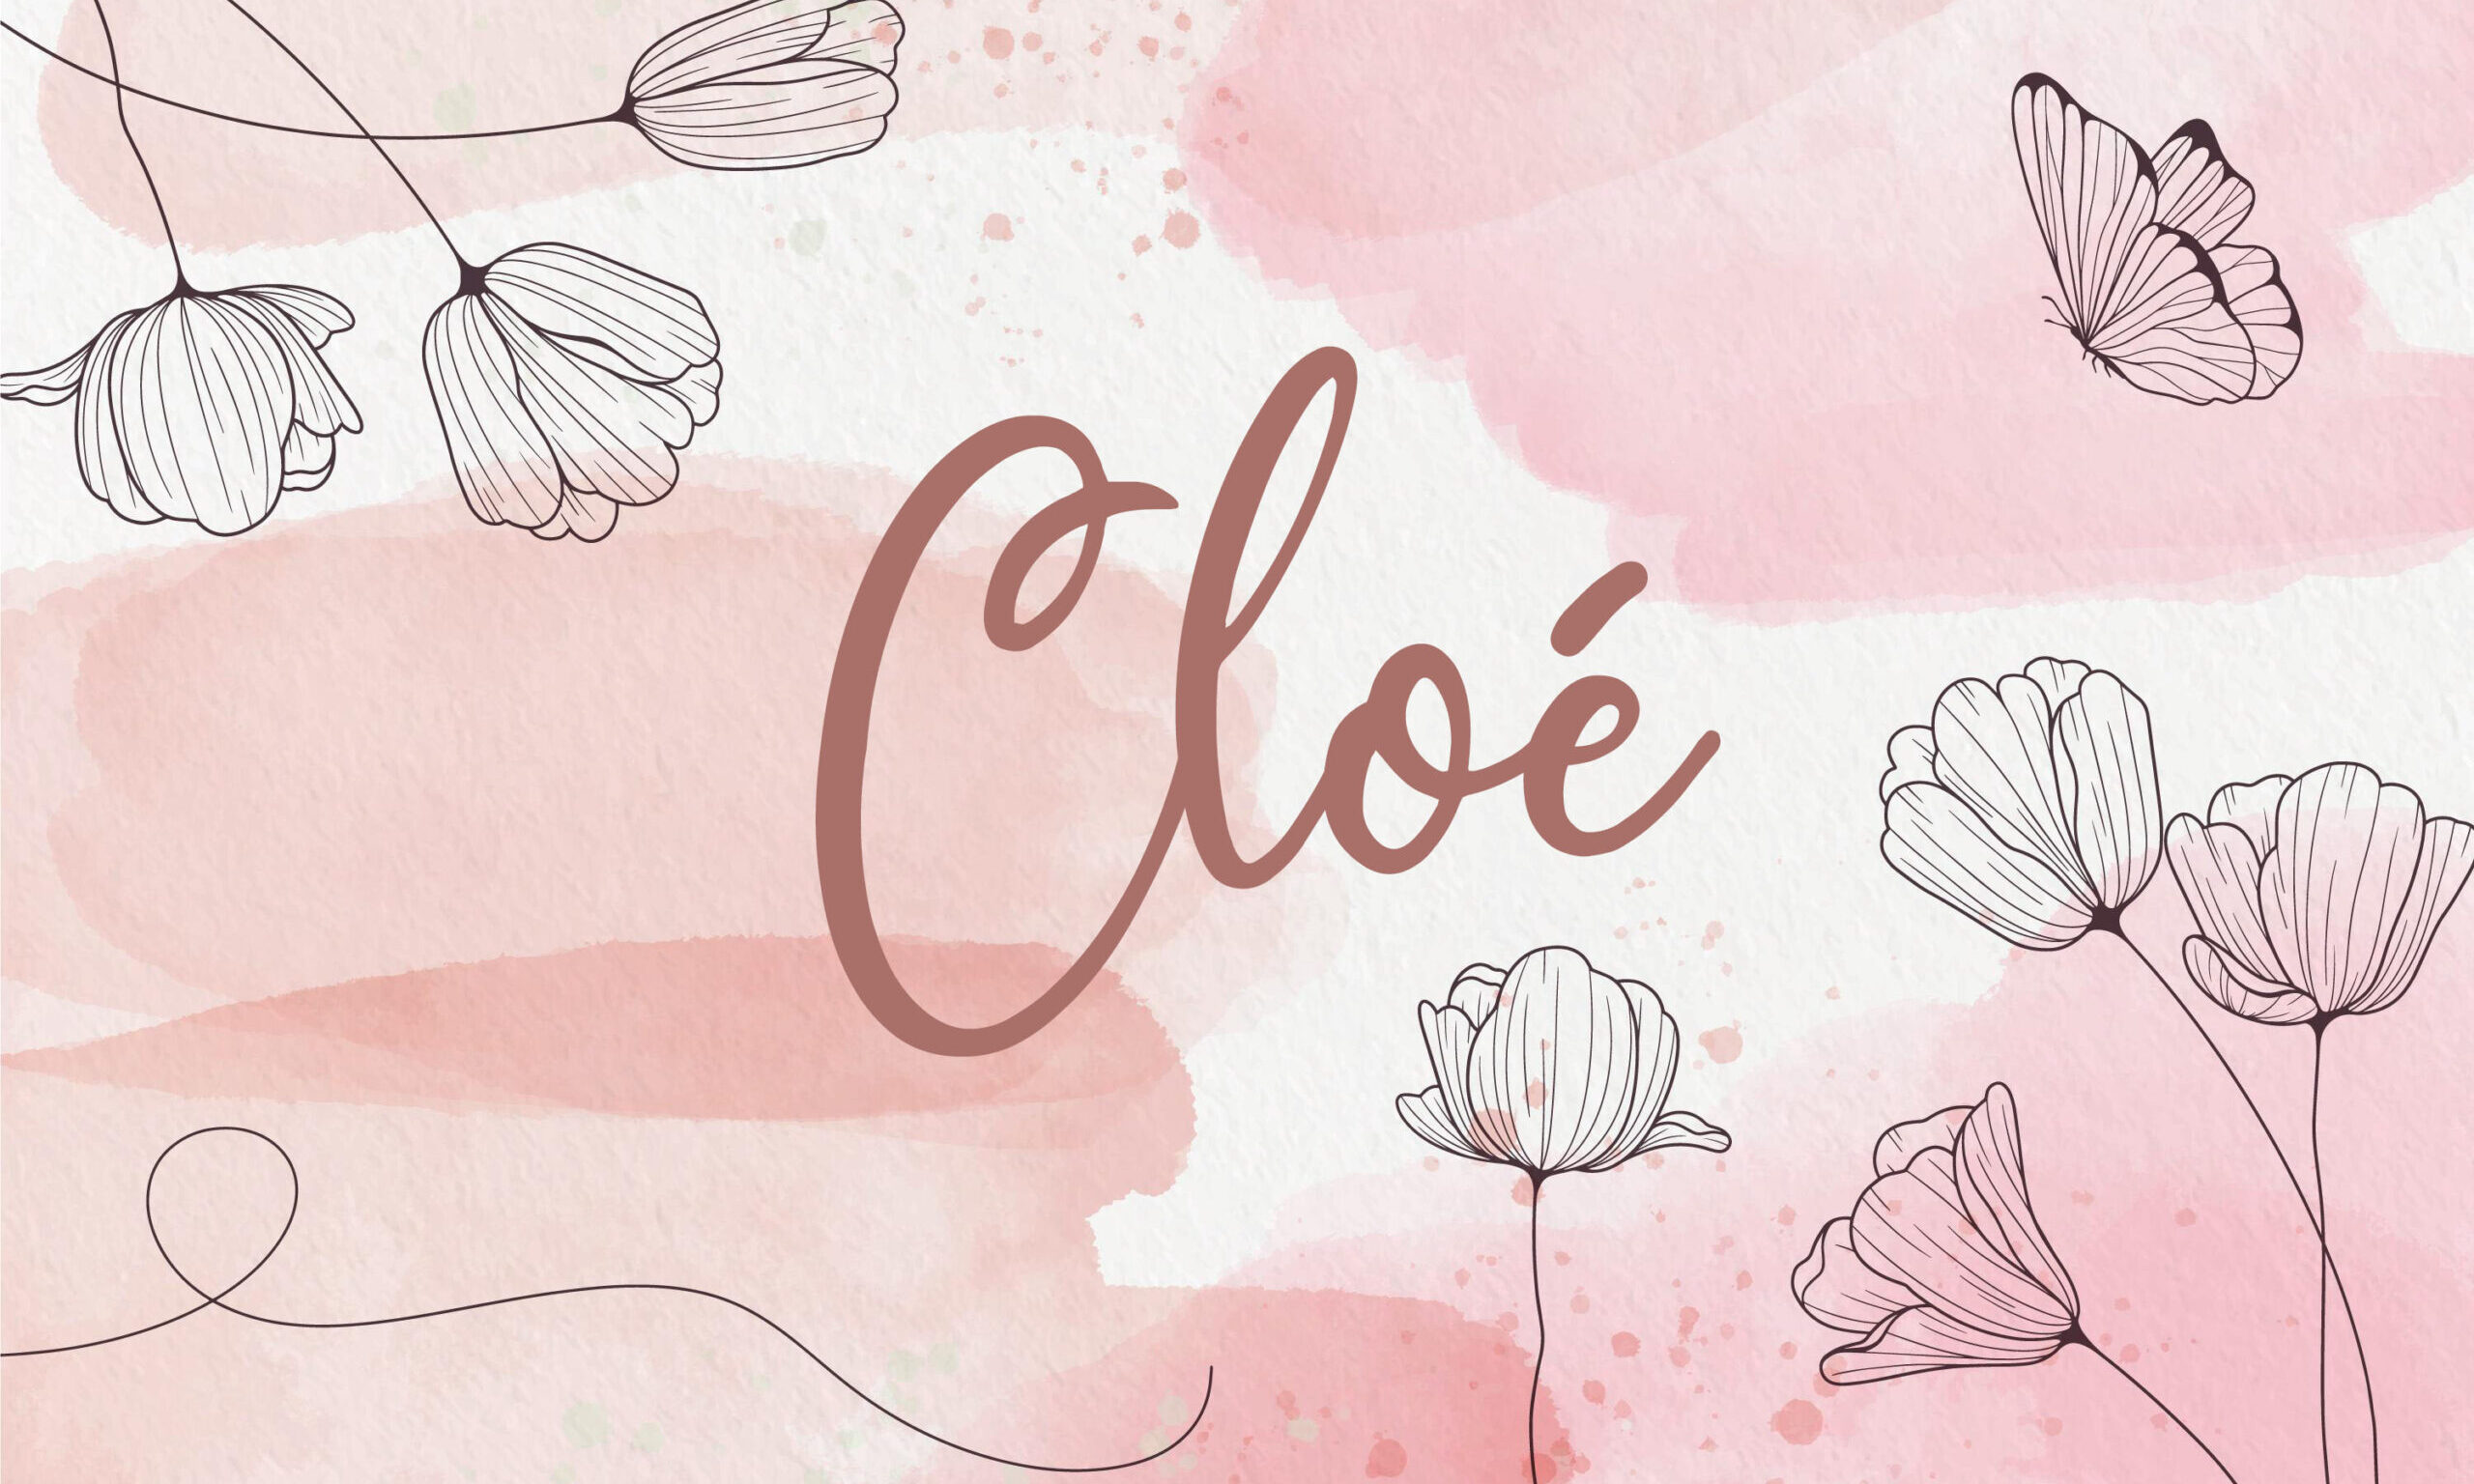 Cloé*